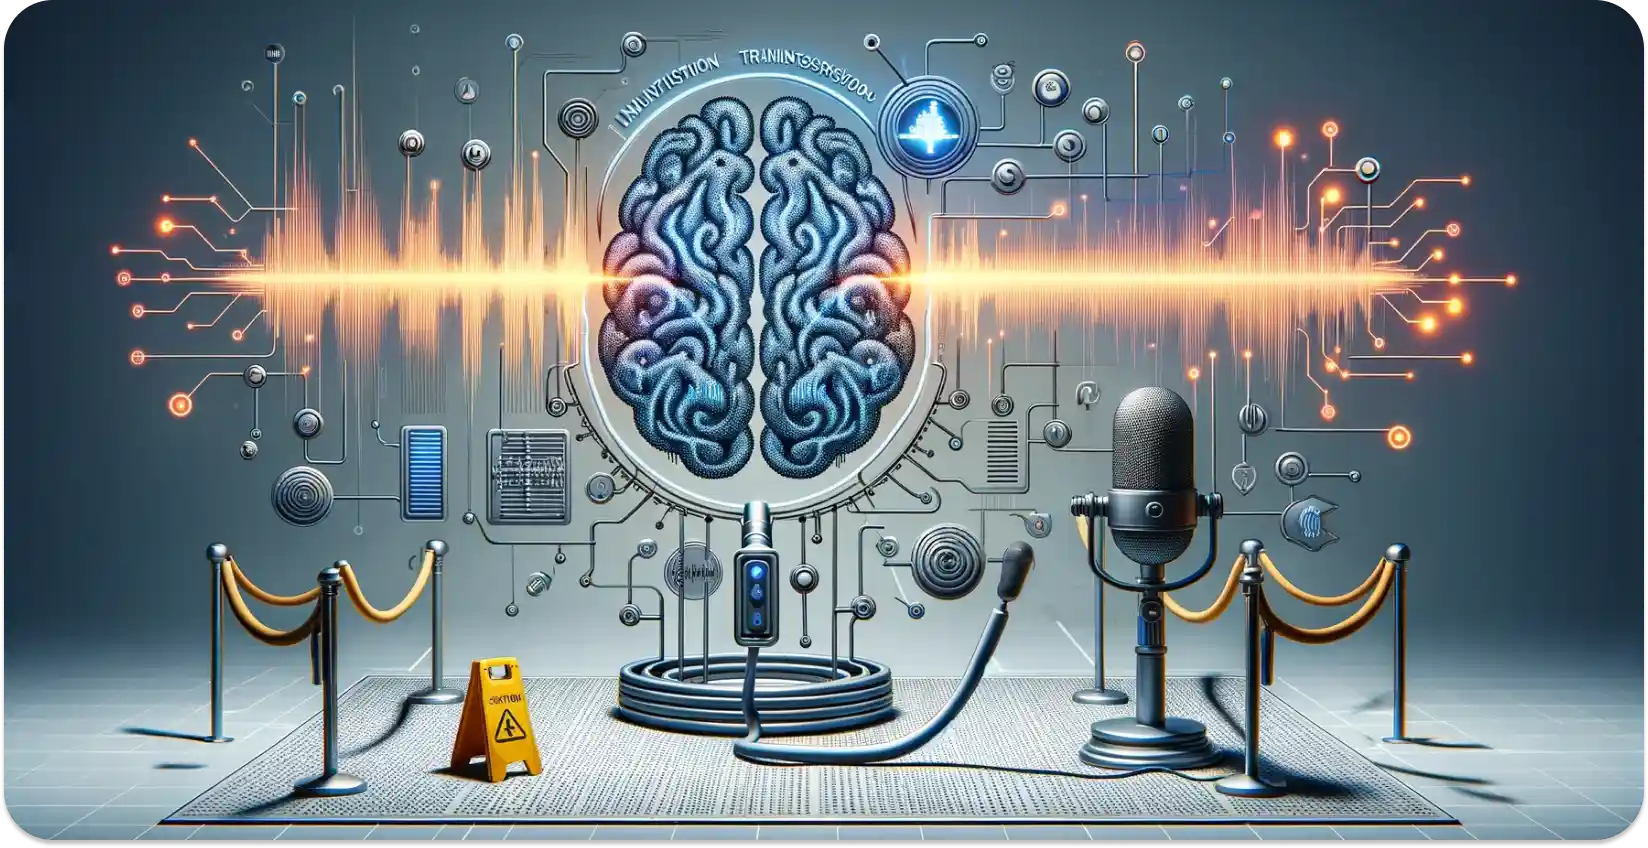 Εννοιολογική τέχνη ενός AI εγκεφάλου που επεξεργάζεται ηχητικά κύματα σε δεδομένα, συμβολίζοντας τη μεταγραφή ήχου.